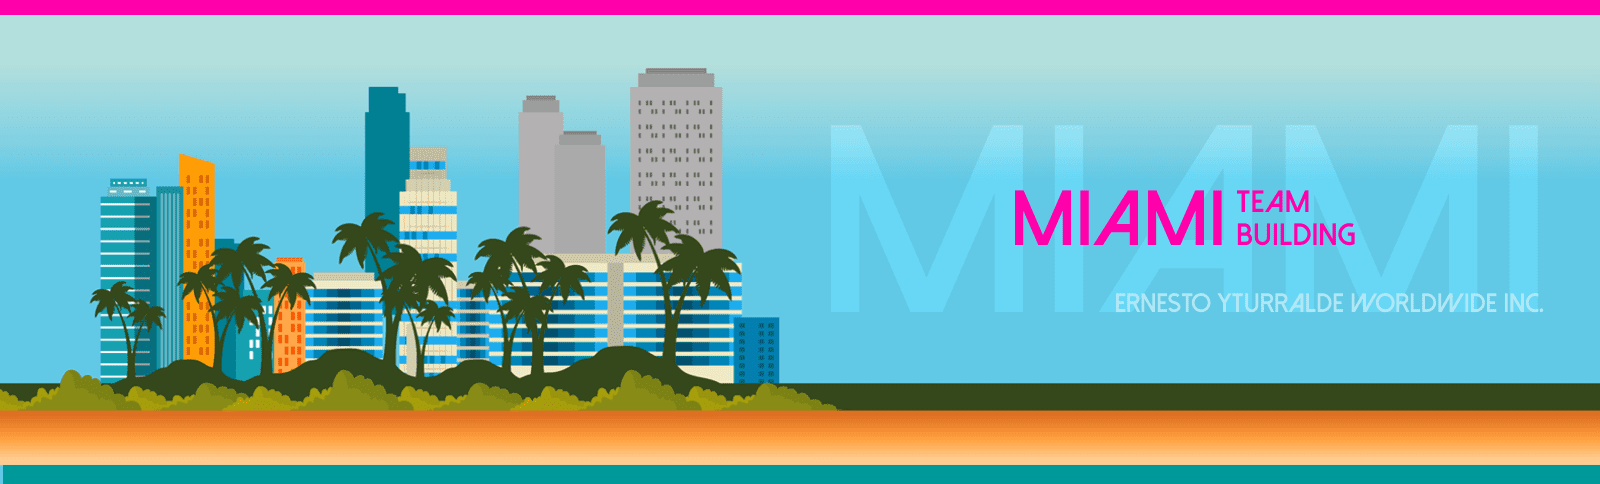 Miami Team Building / Miami Outdoor Training para el desarrollo de tus equipos de trabajo